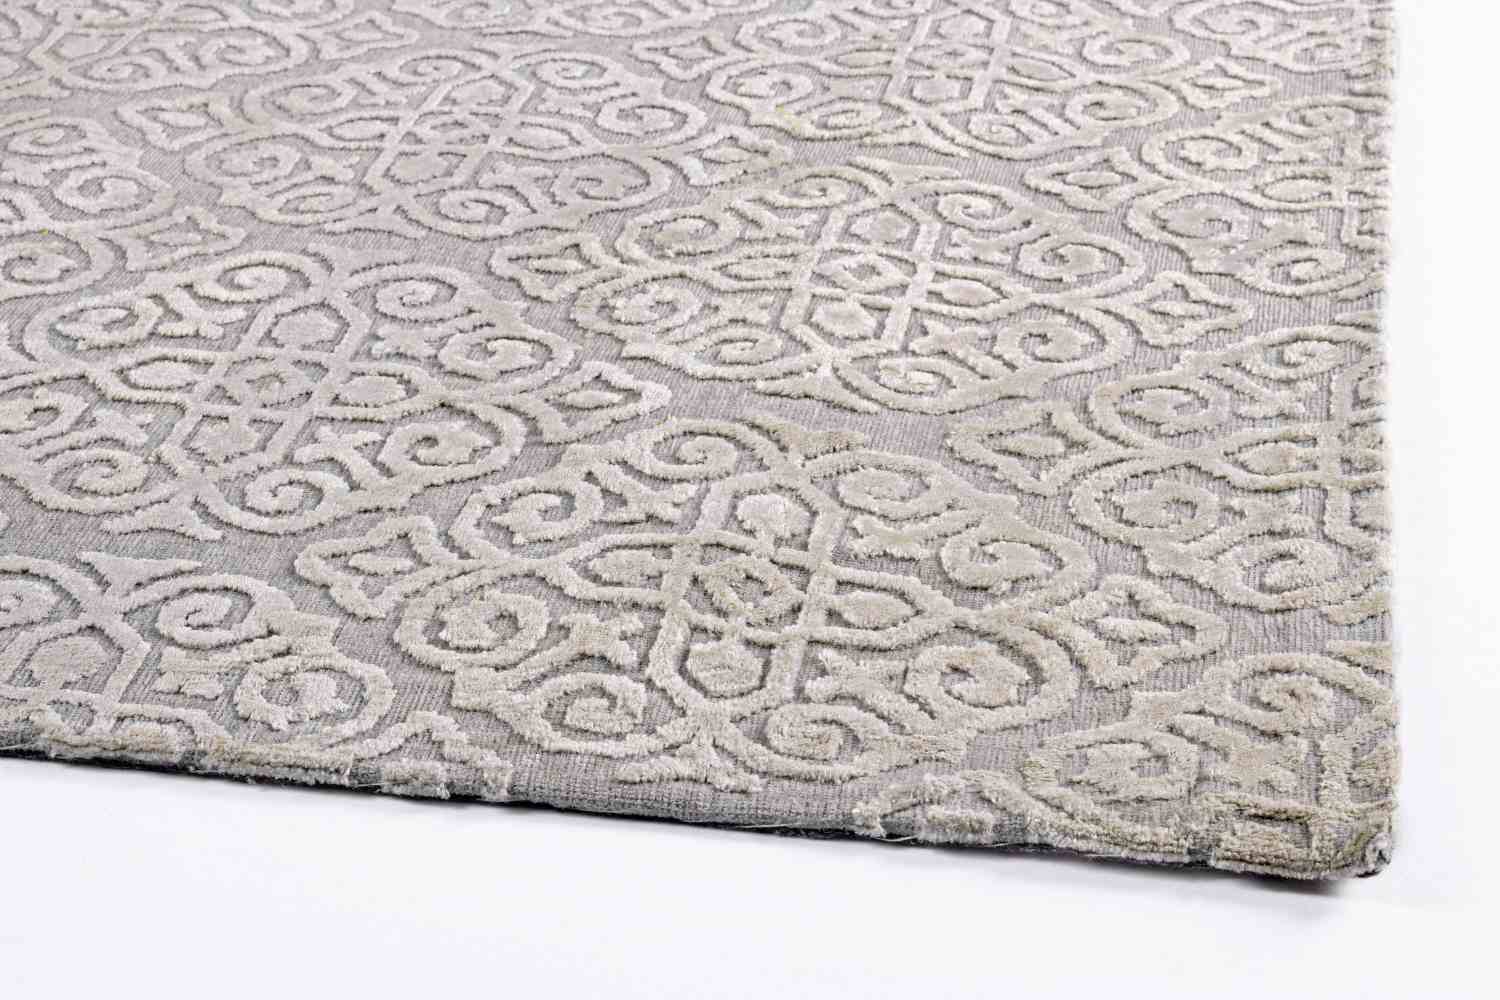 Der Teppich Imperial überzeugt mit seinem klassischen Design. Gefertigt wurde die Vorderseite aus 100% Viskose und die Rückseite aus 100% Baumwolle. Der Teppich besitzt einen hellgrauen Farbton und die Maße von 160x230 cm.